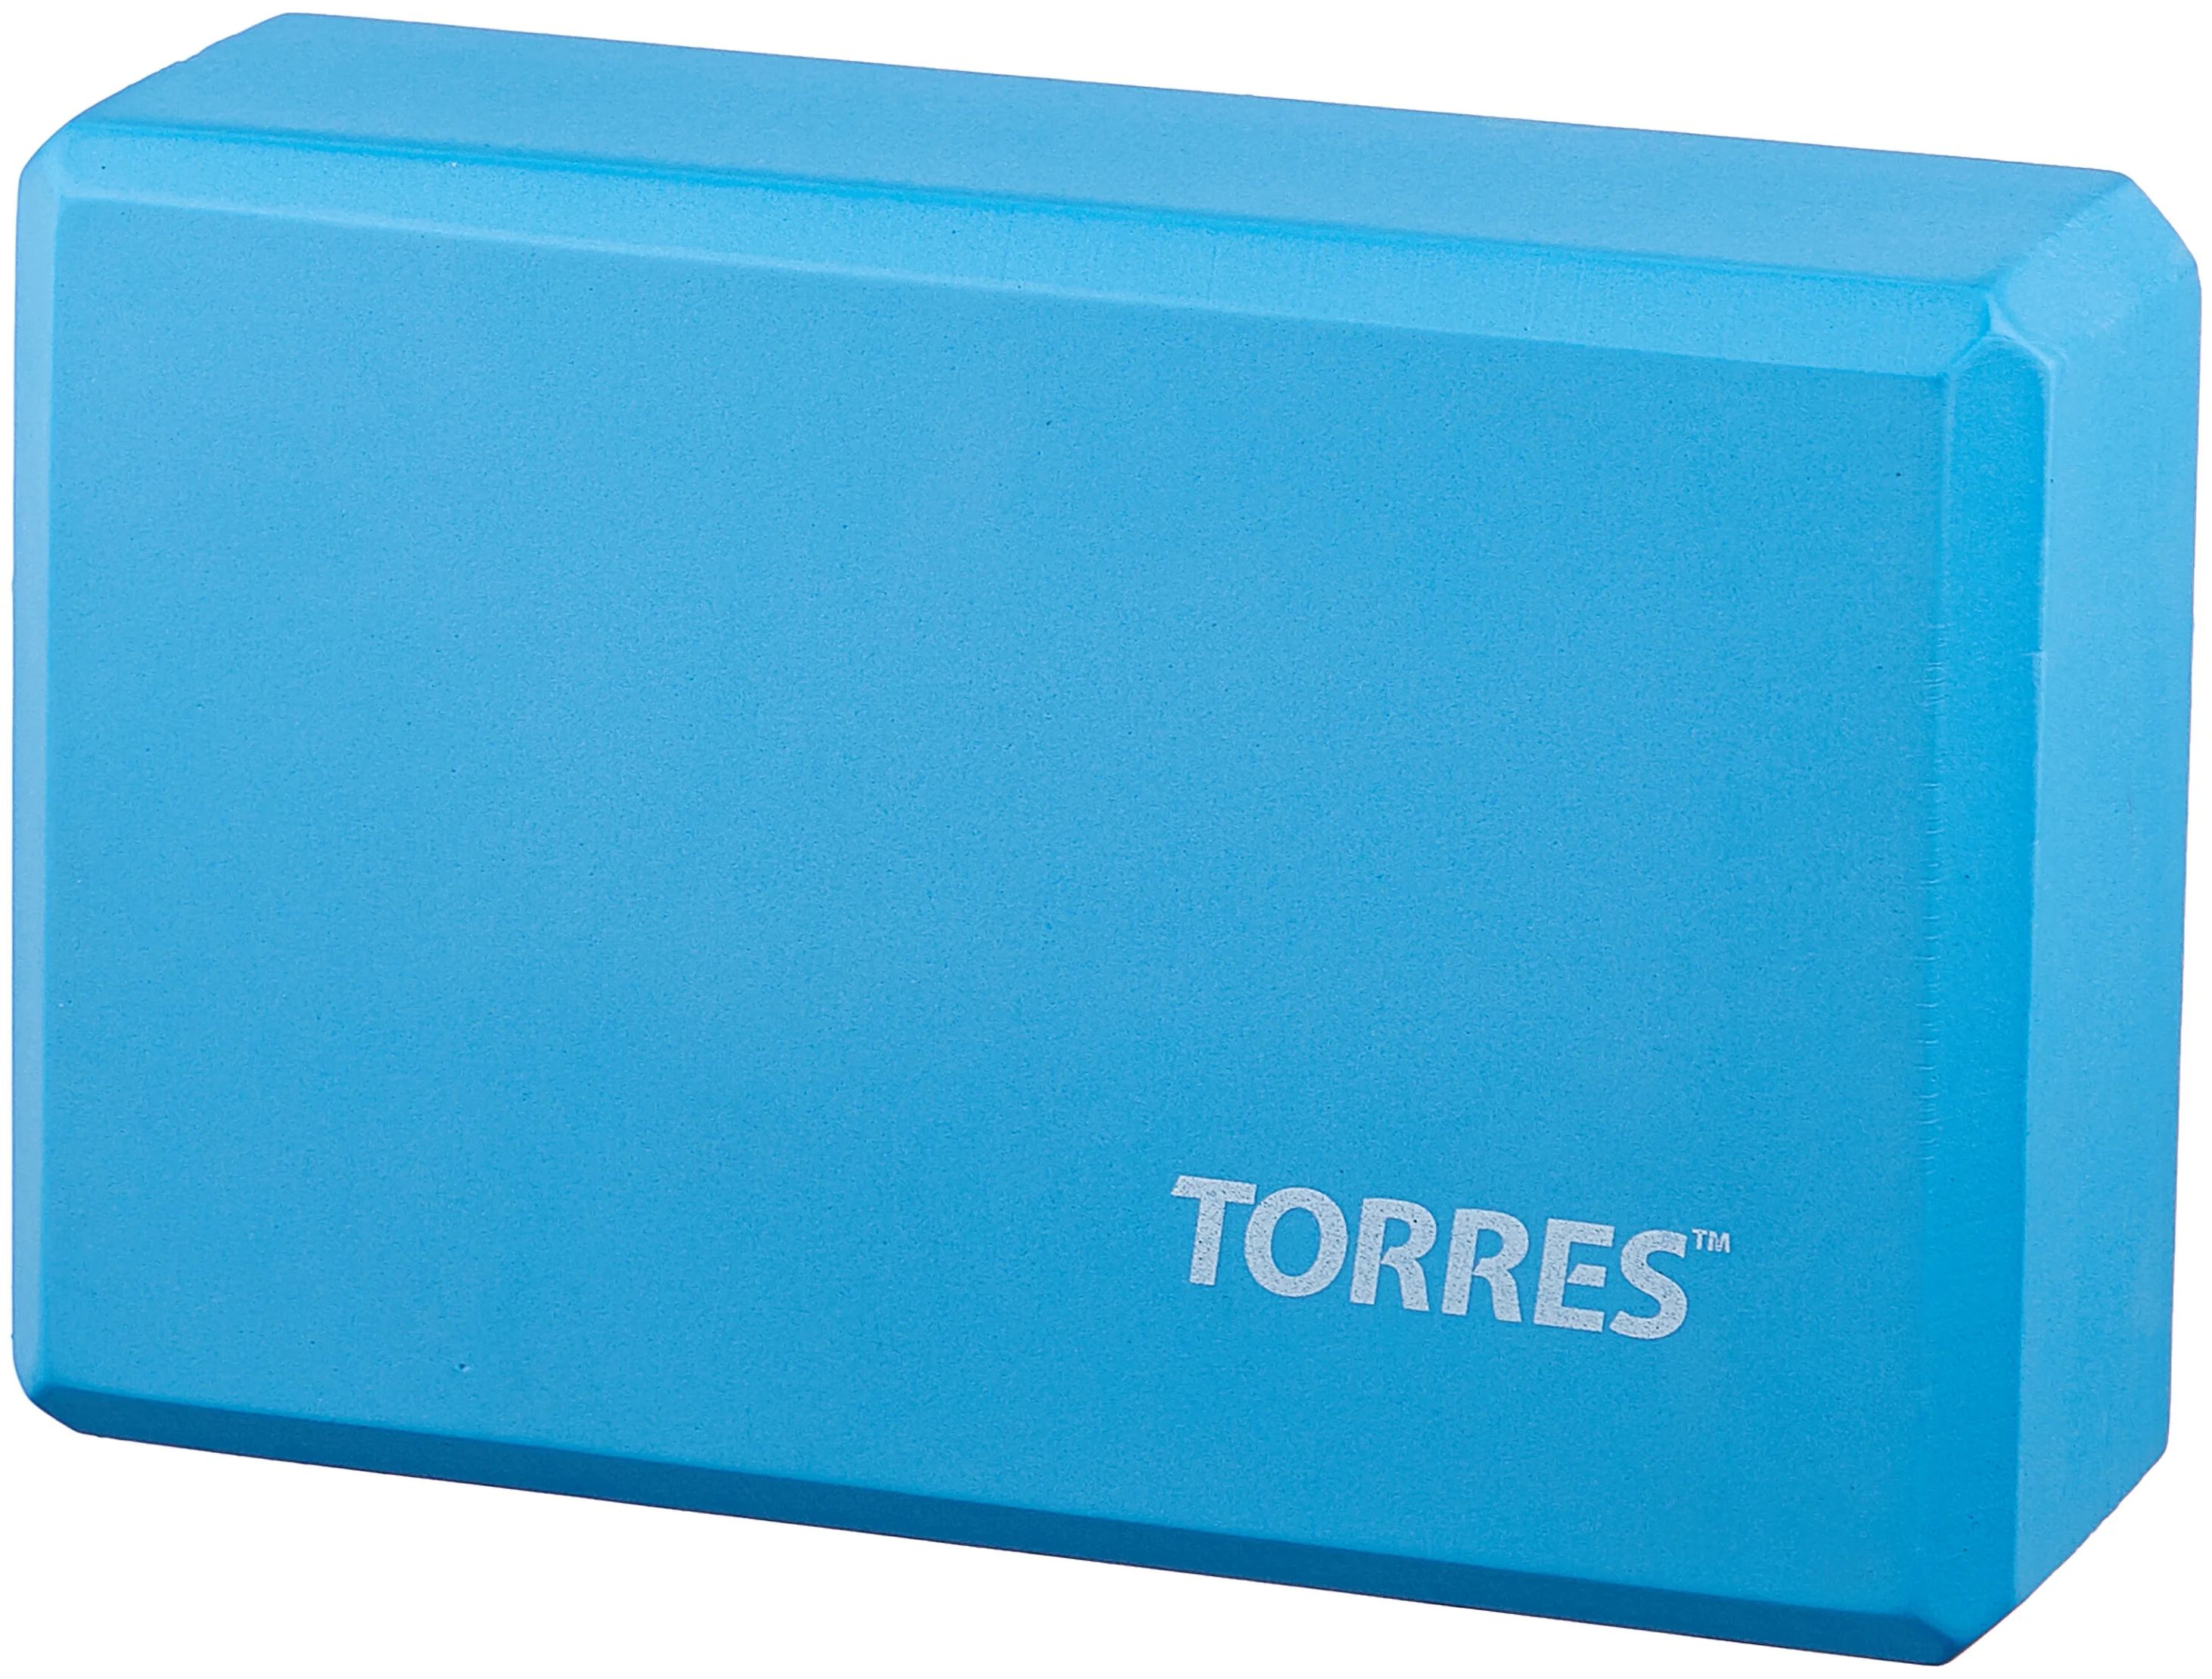 Блок для йоги Torres размер 8x15x23 см, материал ЭВА, голубой